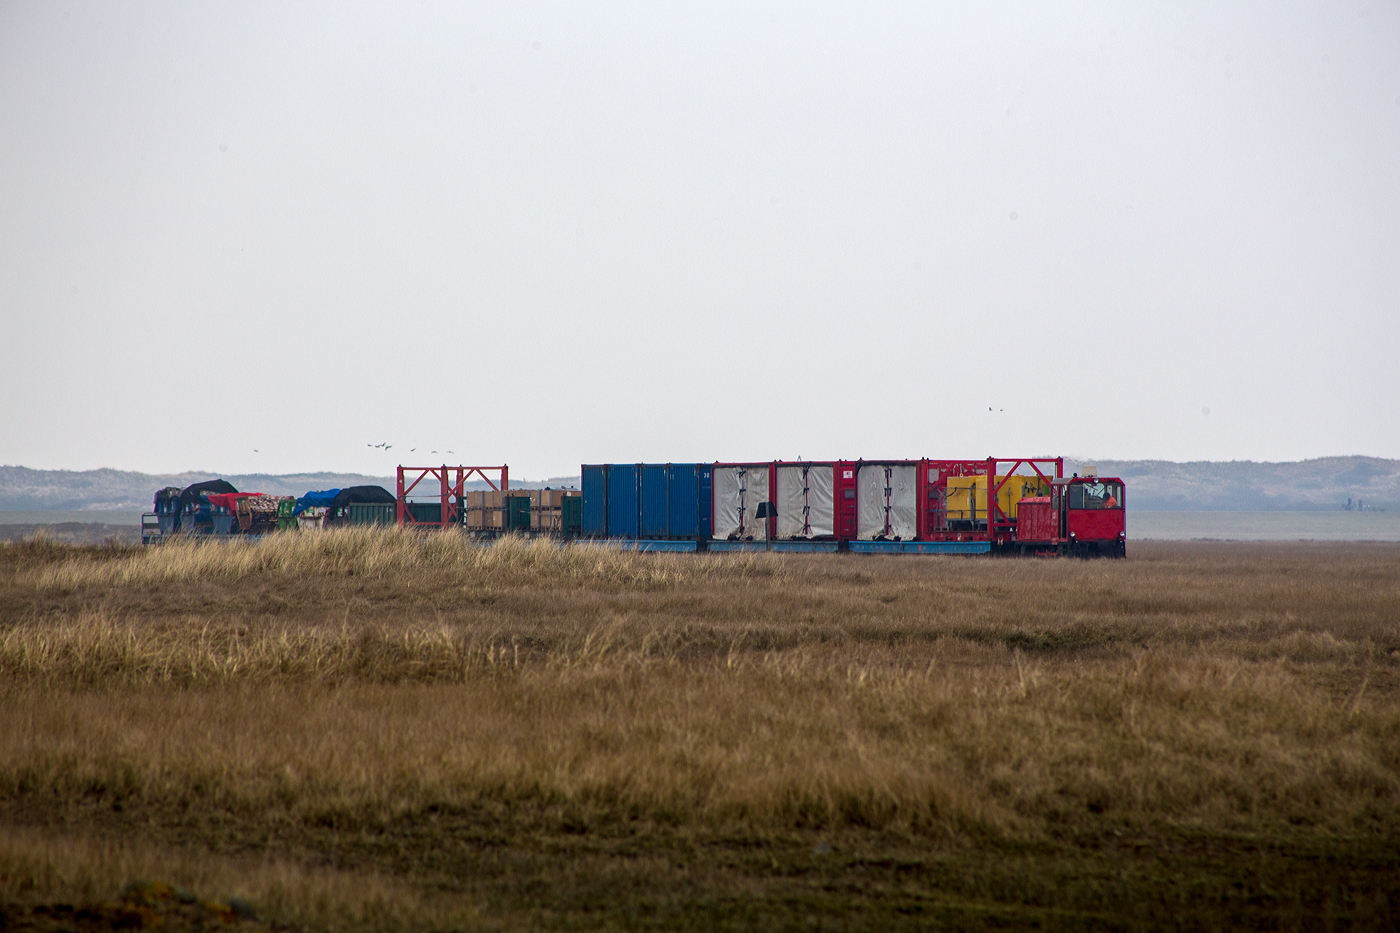 Es gibt in Deutschland auch noch schmalspurige Güterzüge, auch wenn die Wangerooger Inselbahn eine der letzten Schmalspurbahnen Deutschlands mit Güterverkehr ist. Zudem ist sie die letzte Schmalspurbahn der DB AG.

Hier kommt die DB 399 106-4 (98 80 3399 106-4 D-DB) der Wangerooger Inselbahn (SIW - Schifffahrt und Inselbahn Wangerooge),  eine ex VEB Mansfeld-Kombinat Wilhelm Piek - August-Bebel-Hütte vom Typ Faur L18H (Baujahr1990), kommt am 12 März 2024 mit einem Güterzug von Wangerooge durch die Salzwiesen und erreicht bald Wangerooge Westanleger. 

Am Westanleger wird der Güterzug dann mittels (20 t) Schwerlastgabelstapler entladen und kurz zwischen gelagert. Nach der Ankunft eines der (Cargo-) Versorgungsschiffe (RoRo-Schiffe), der Harle Express oder Harle Gatt, werden die Güter vom Schiff auf den nun leeren Güterzug umgeladen. Danach werden die zwischengelagerten Güter (meist auf oder in 20-Fuß Containern) mittels Schwerlastgabelstapler aufs Schiff verladen, die dann zum Festland nach Harlesiel gebracht werden. Da der Fähr- und Güterverkehr zwischen Harlesiel und der Insel Wangerooge sehr Tideabhängig ist, kann man oft Personen- und Güterverkehr gleichzeitig beobachten. 

Da der Fährhafen nicht, wie auf benachbarten Inseln, nahe an das Inseldorf verlegt werden kann, ist und bleibt die Wangerooger Inselbahn, auch aufgrund fehlender Alternativen, das Hauptverkehrsmittel der Insel.